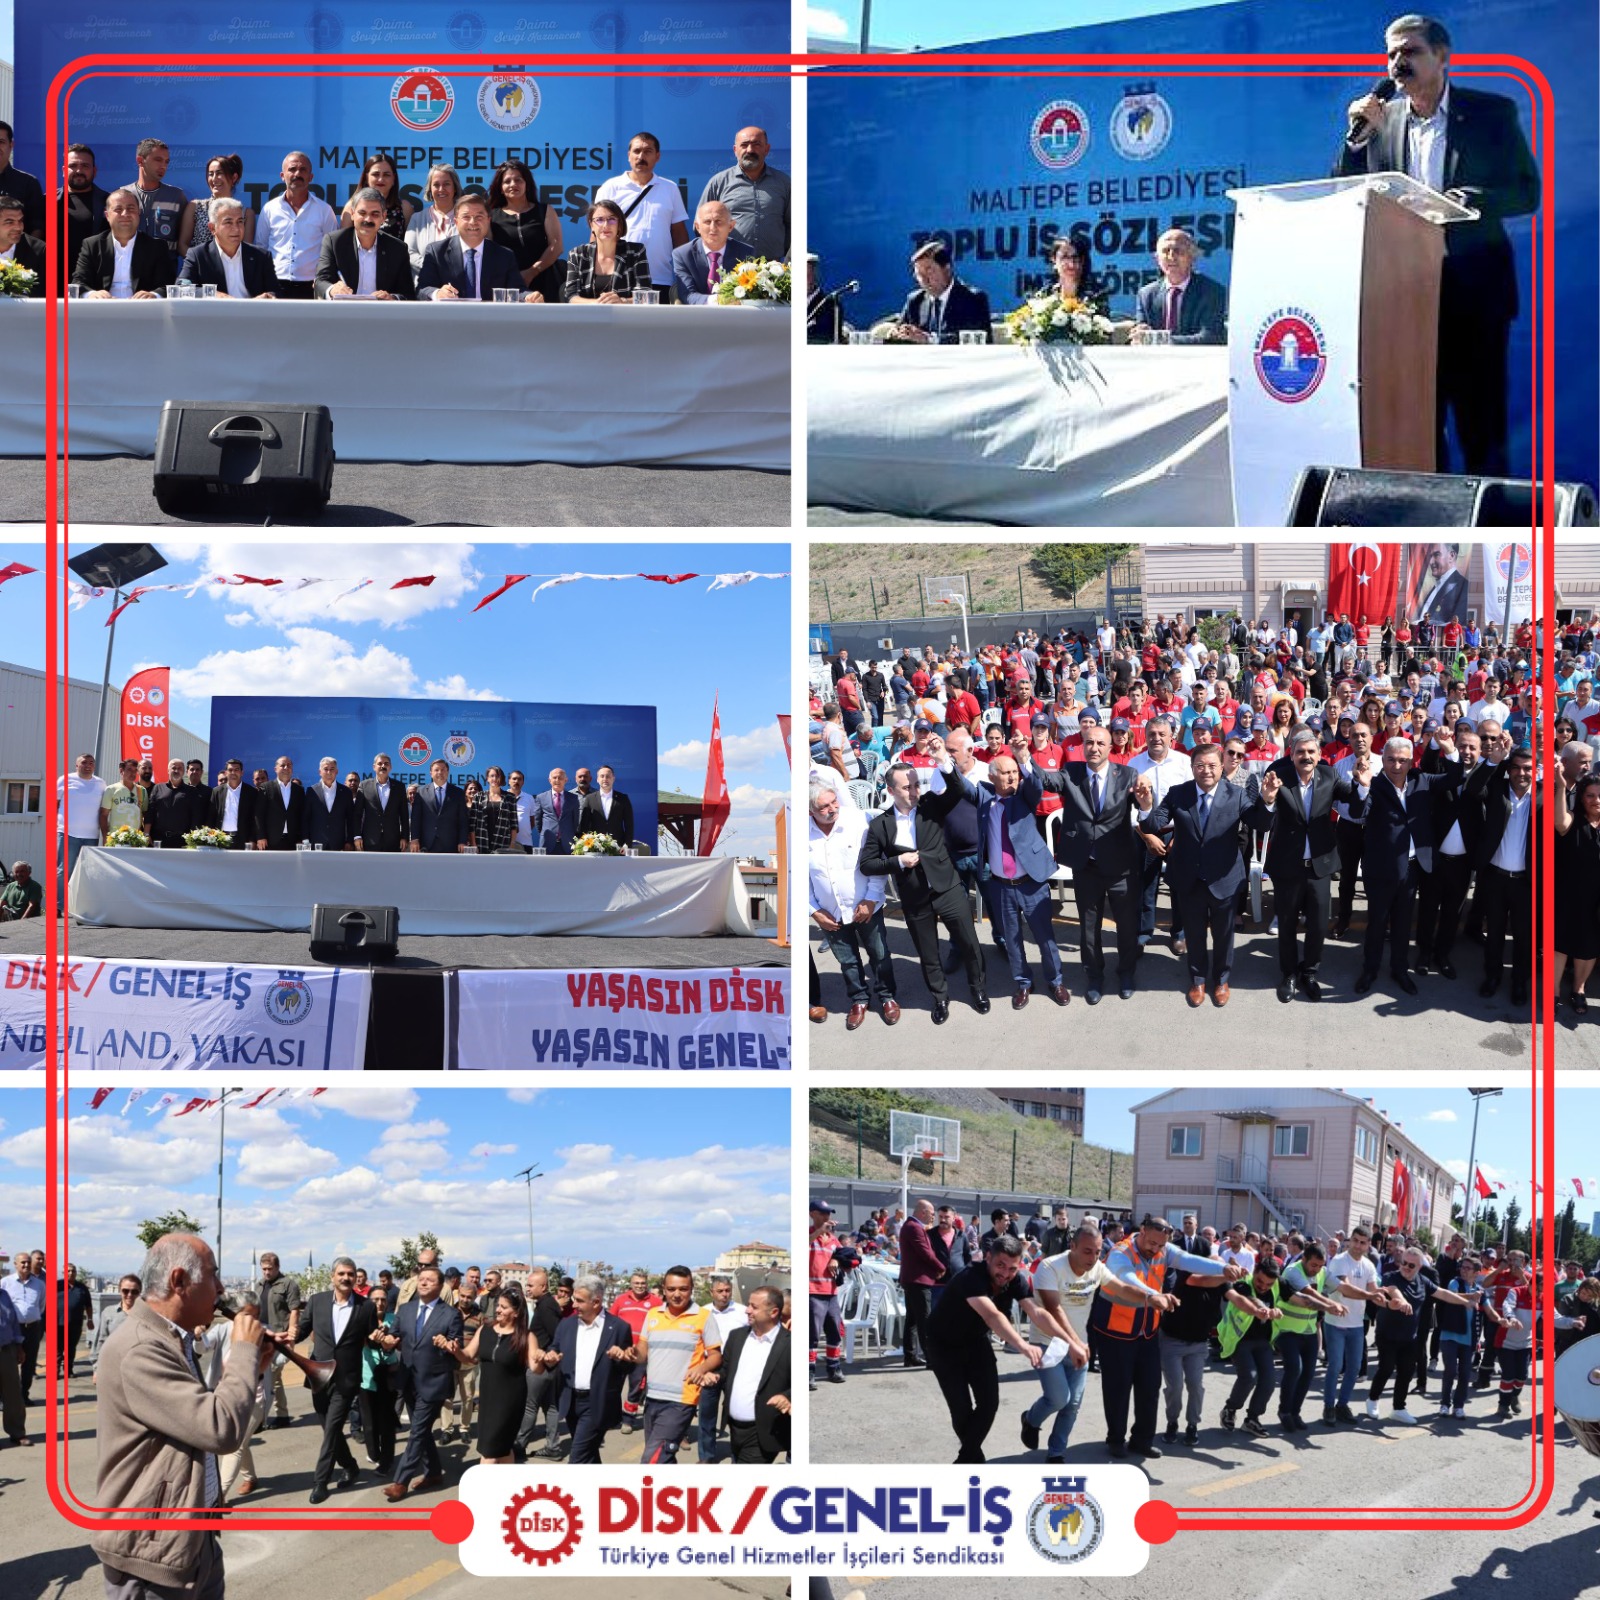 İstanbul Maltepe Belediyesi ile Toplu İş Sözleşmesi Töreni